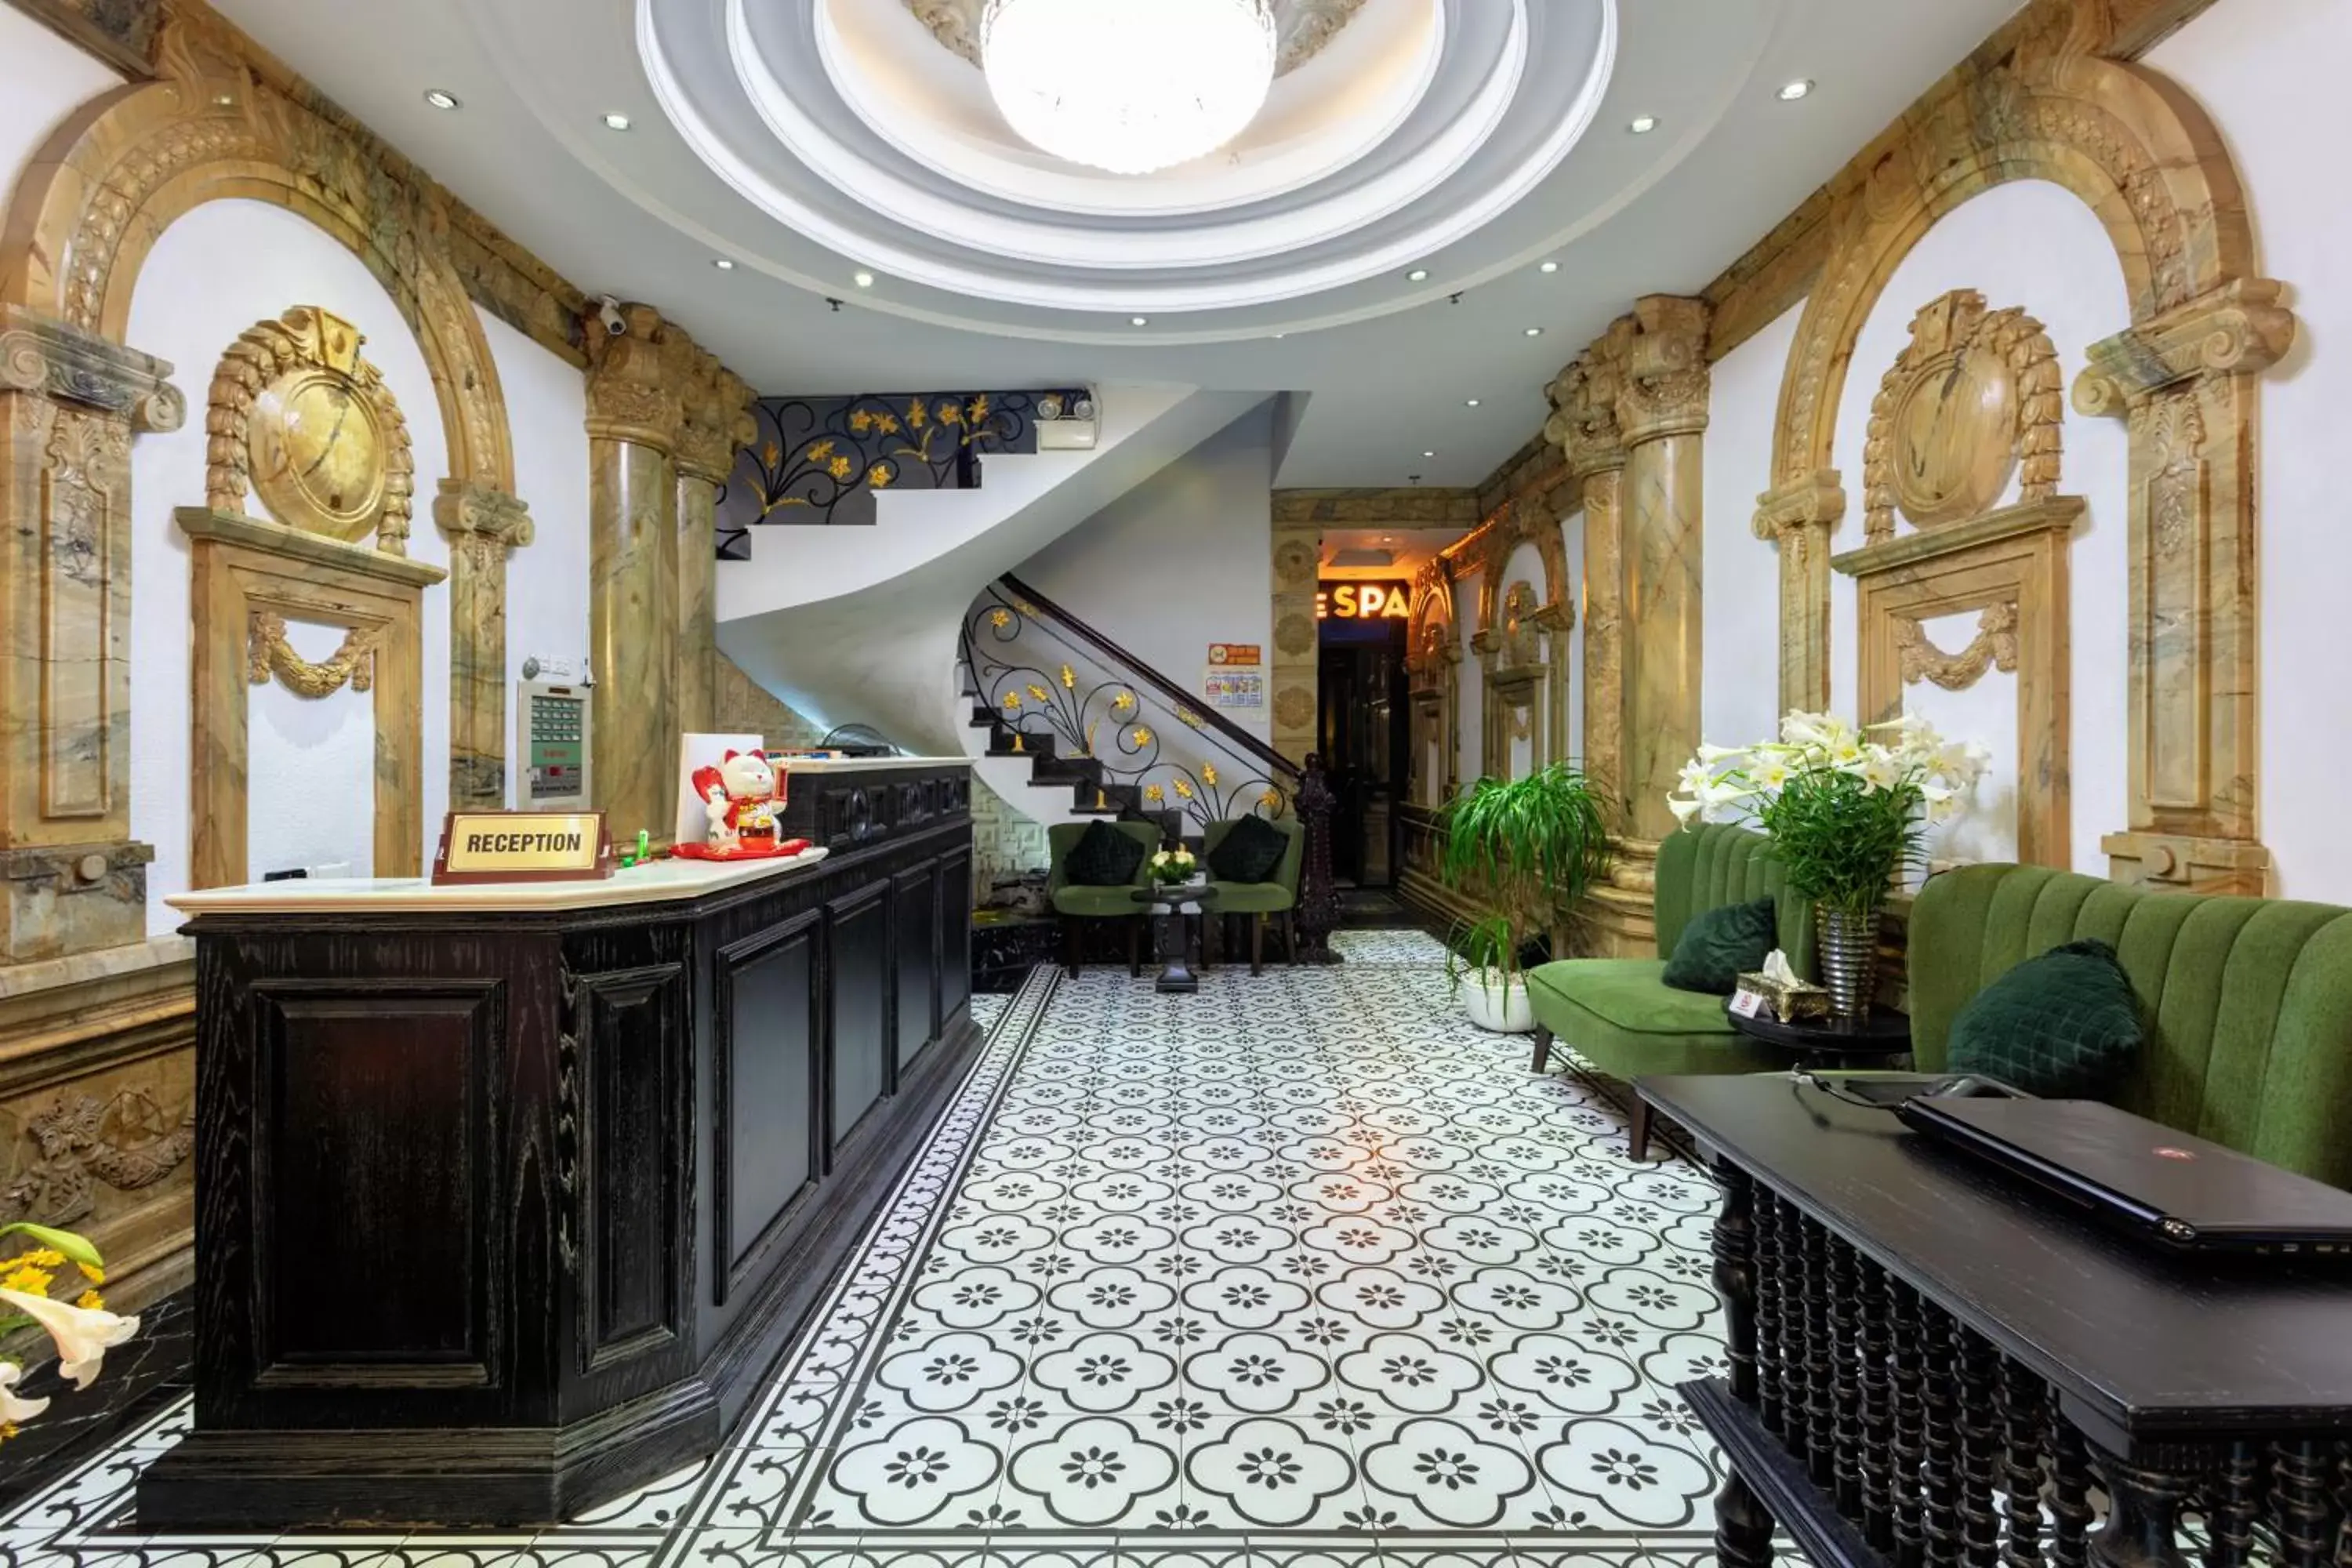 Lobby or reception, Lobby/Reception in Hanoi Media Hotel & Spa